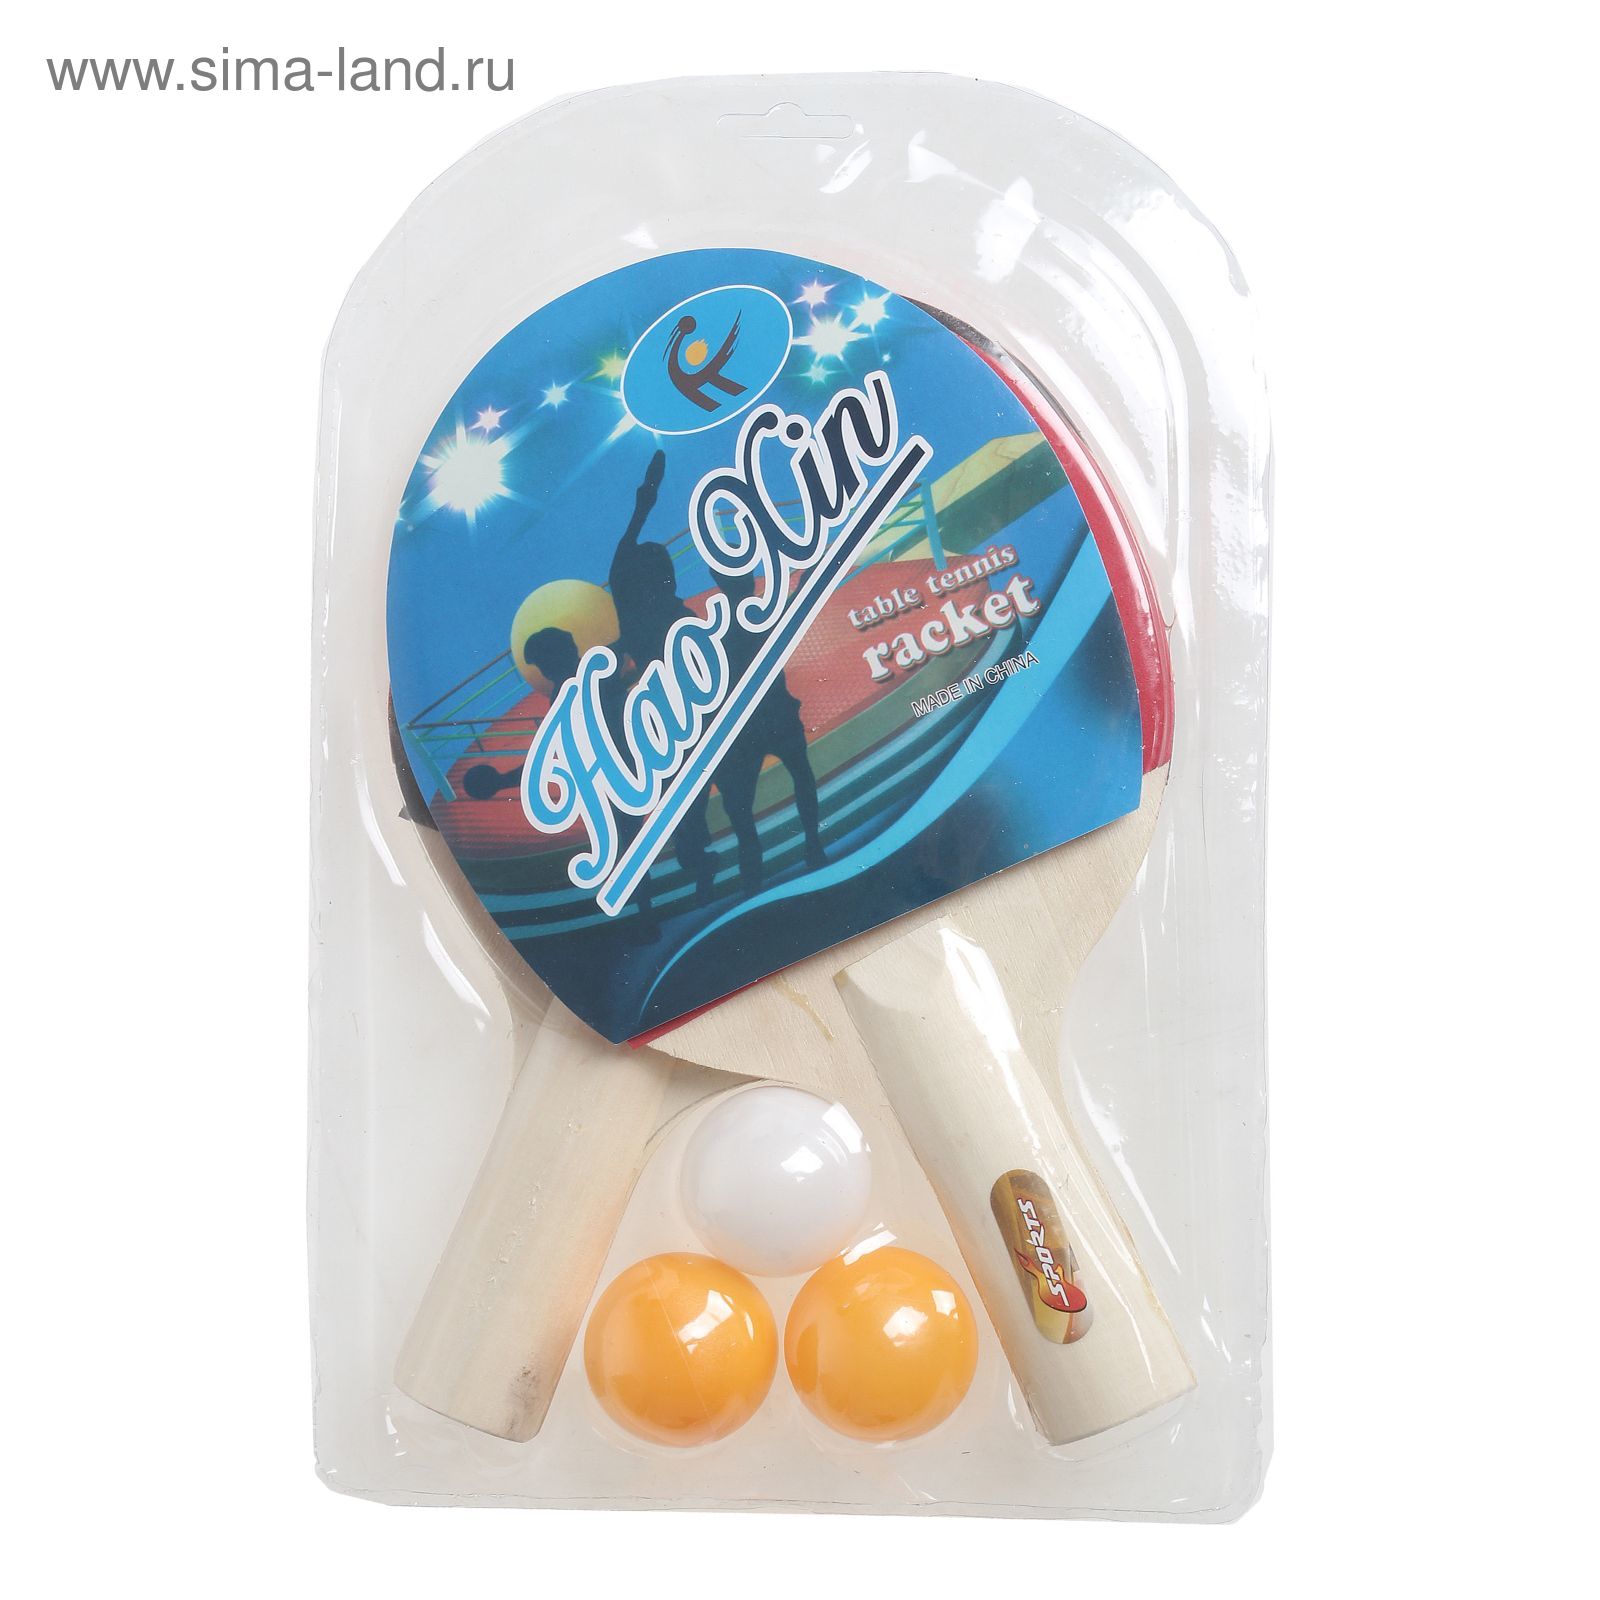 Набор для настольного тенниса, 2 ракетки толщиной 0,5 см, 3 шарика, любительские, пластиковая ручка